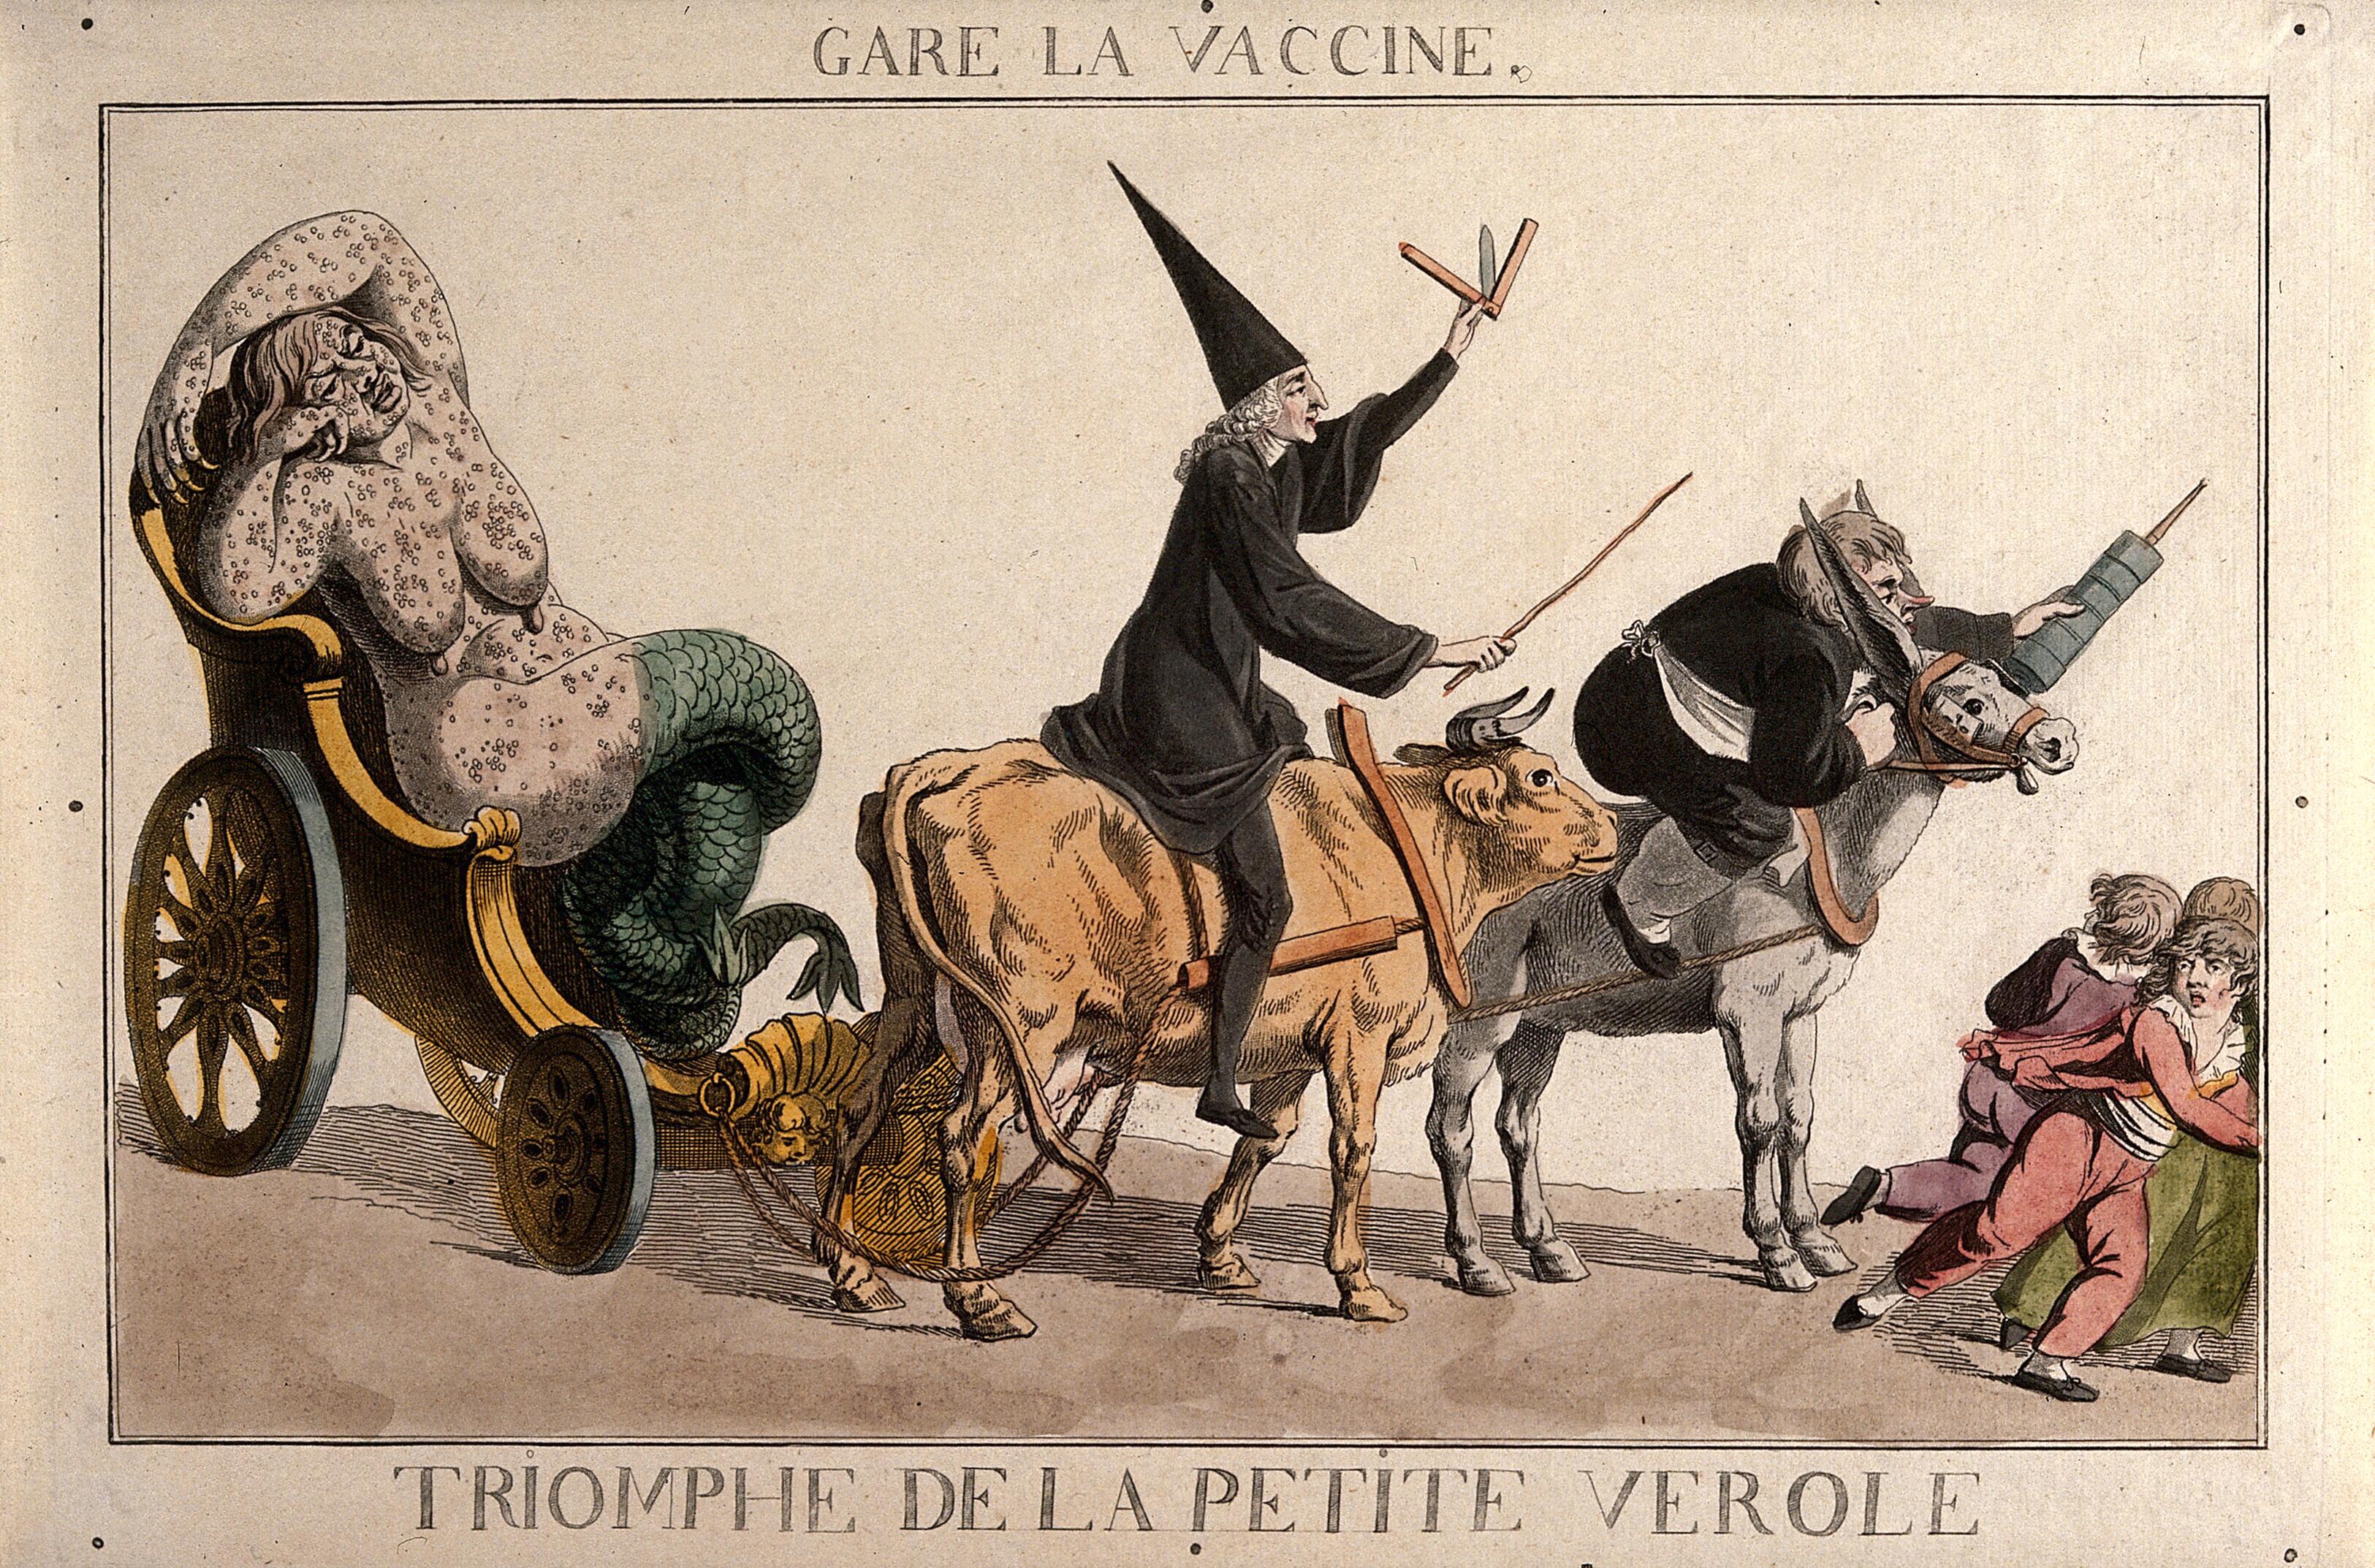 Francia karikatúra a vakcinázás horrorisztikus folyamatáról, marhán érkező orvossal, gigantikus fecskendőt lóbáló patikussal és egy hableánnyá változott himlős nővel